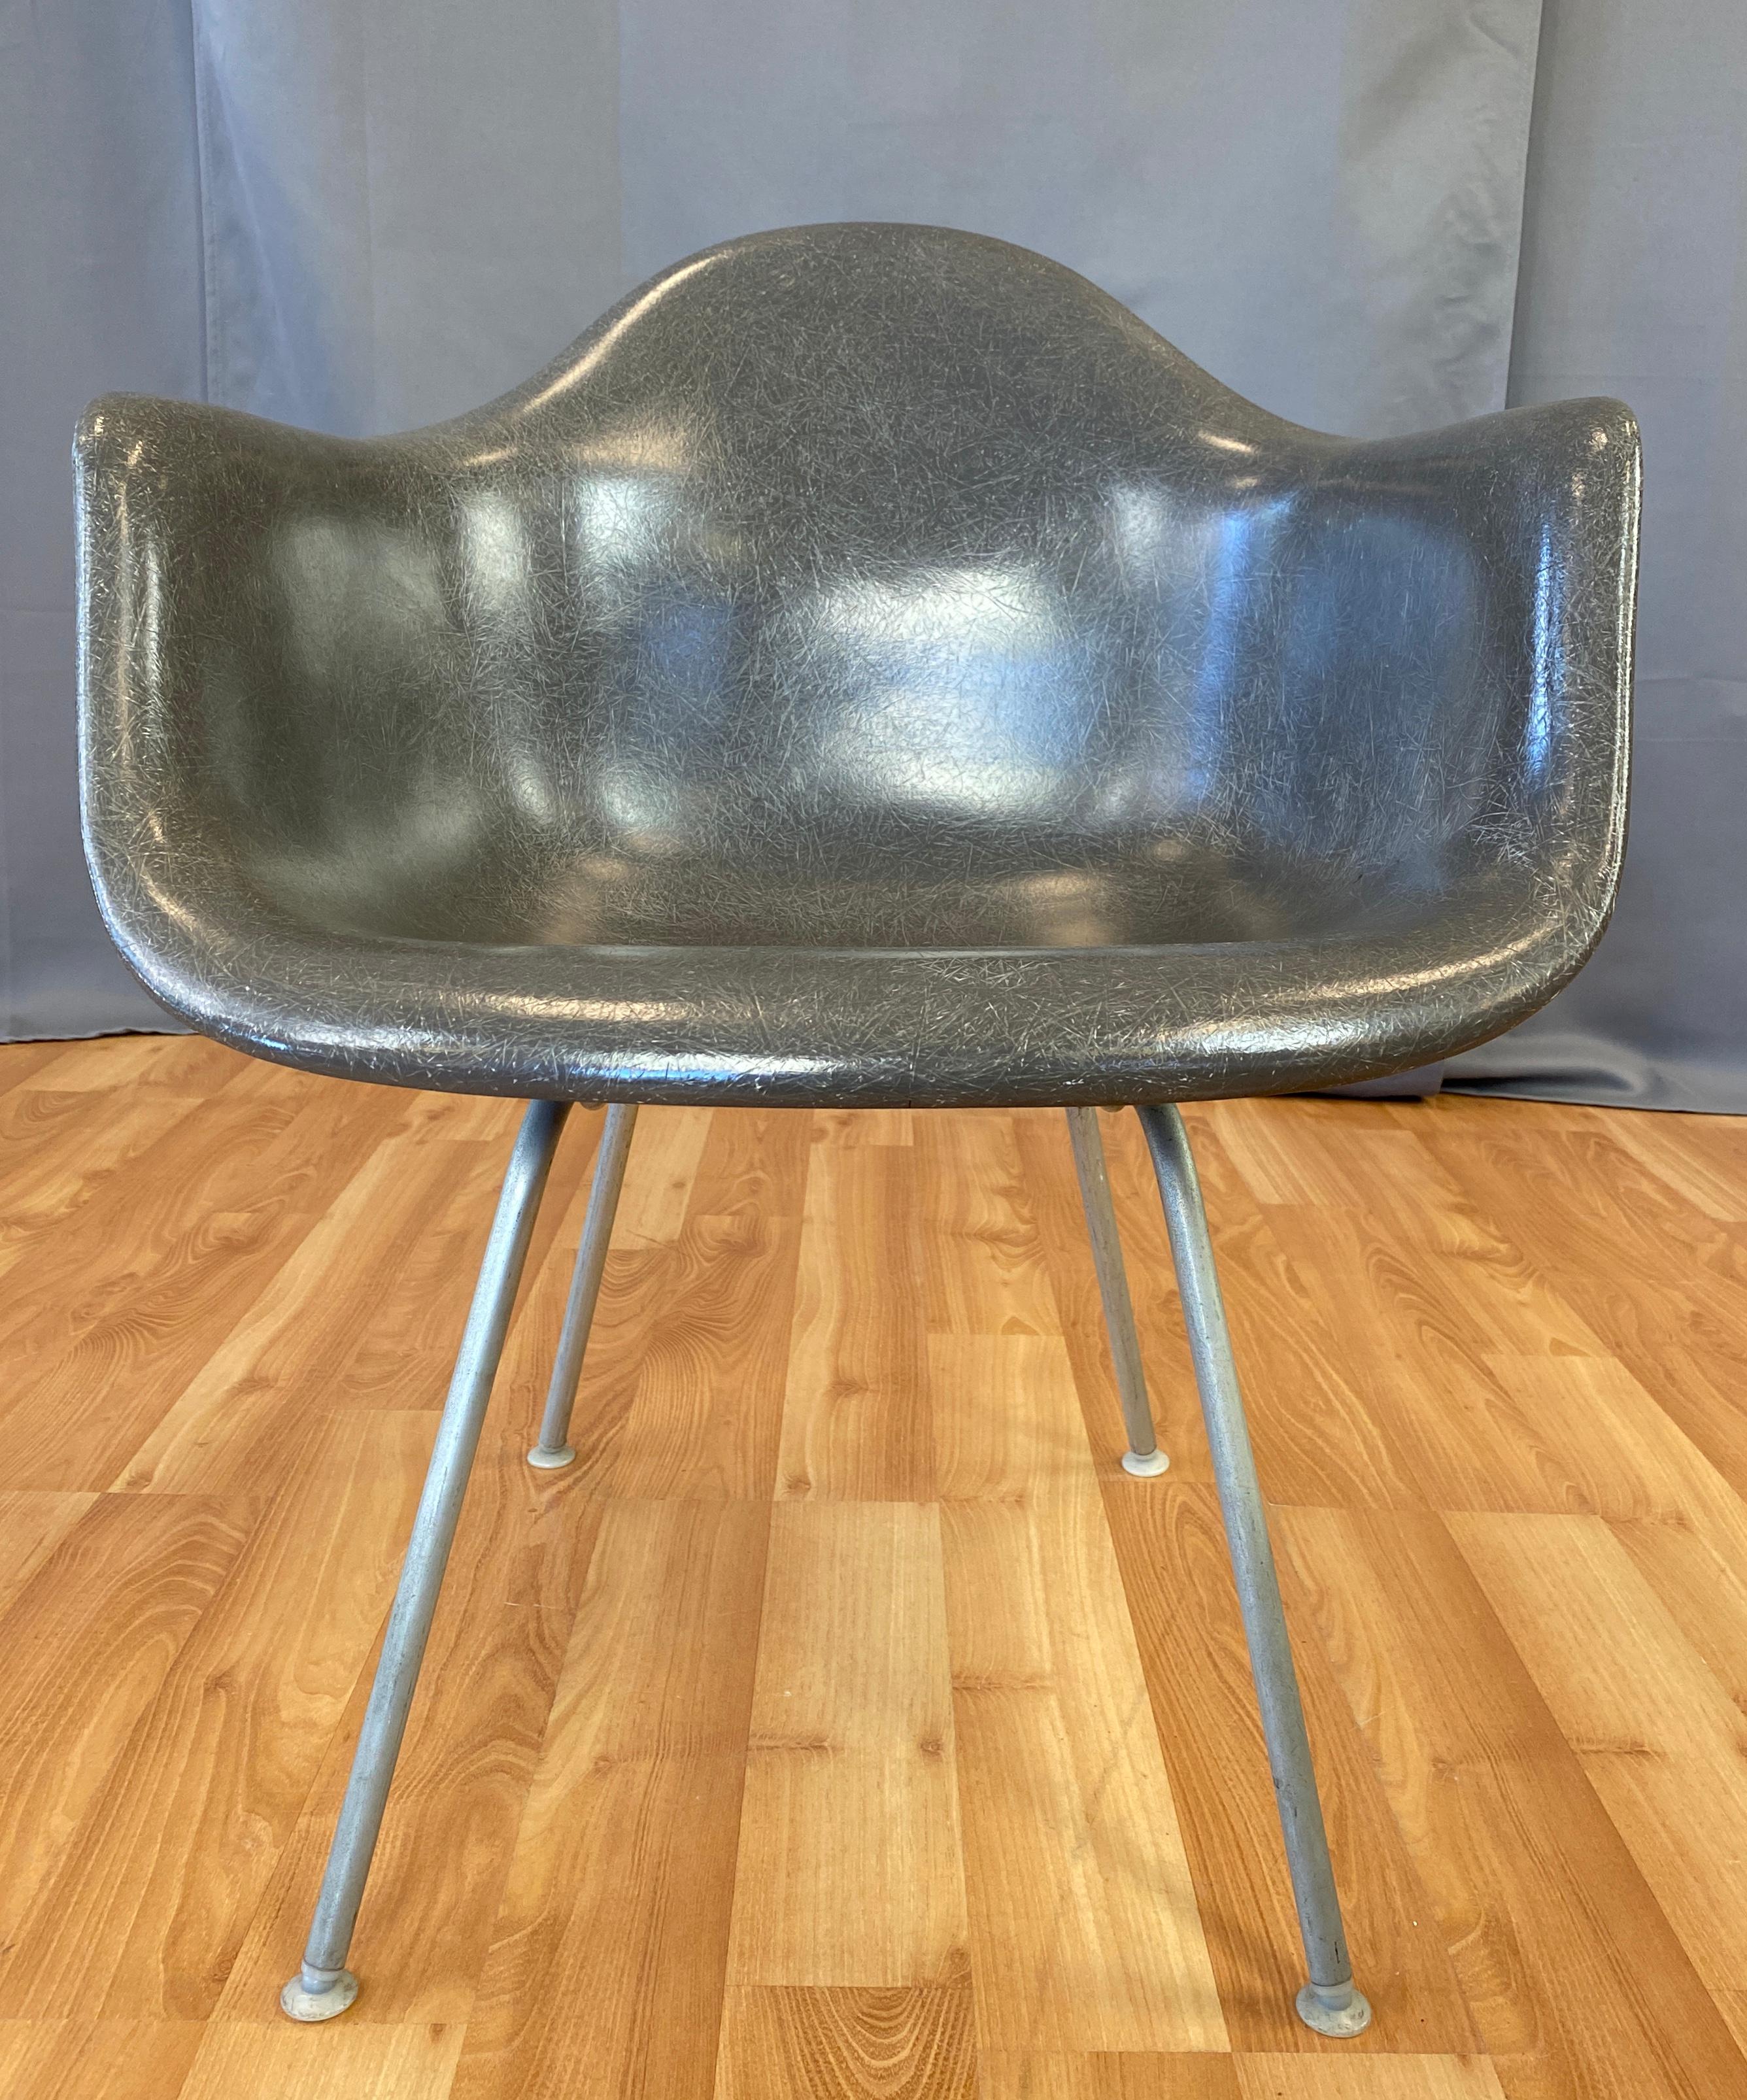 fiberglass shell chair